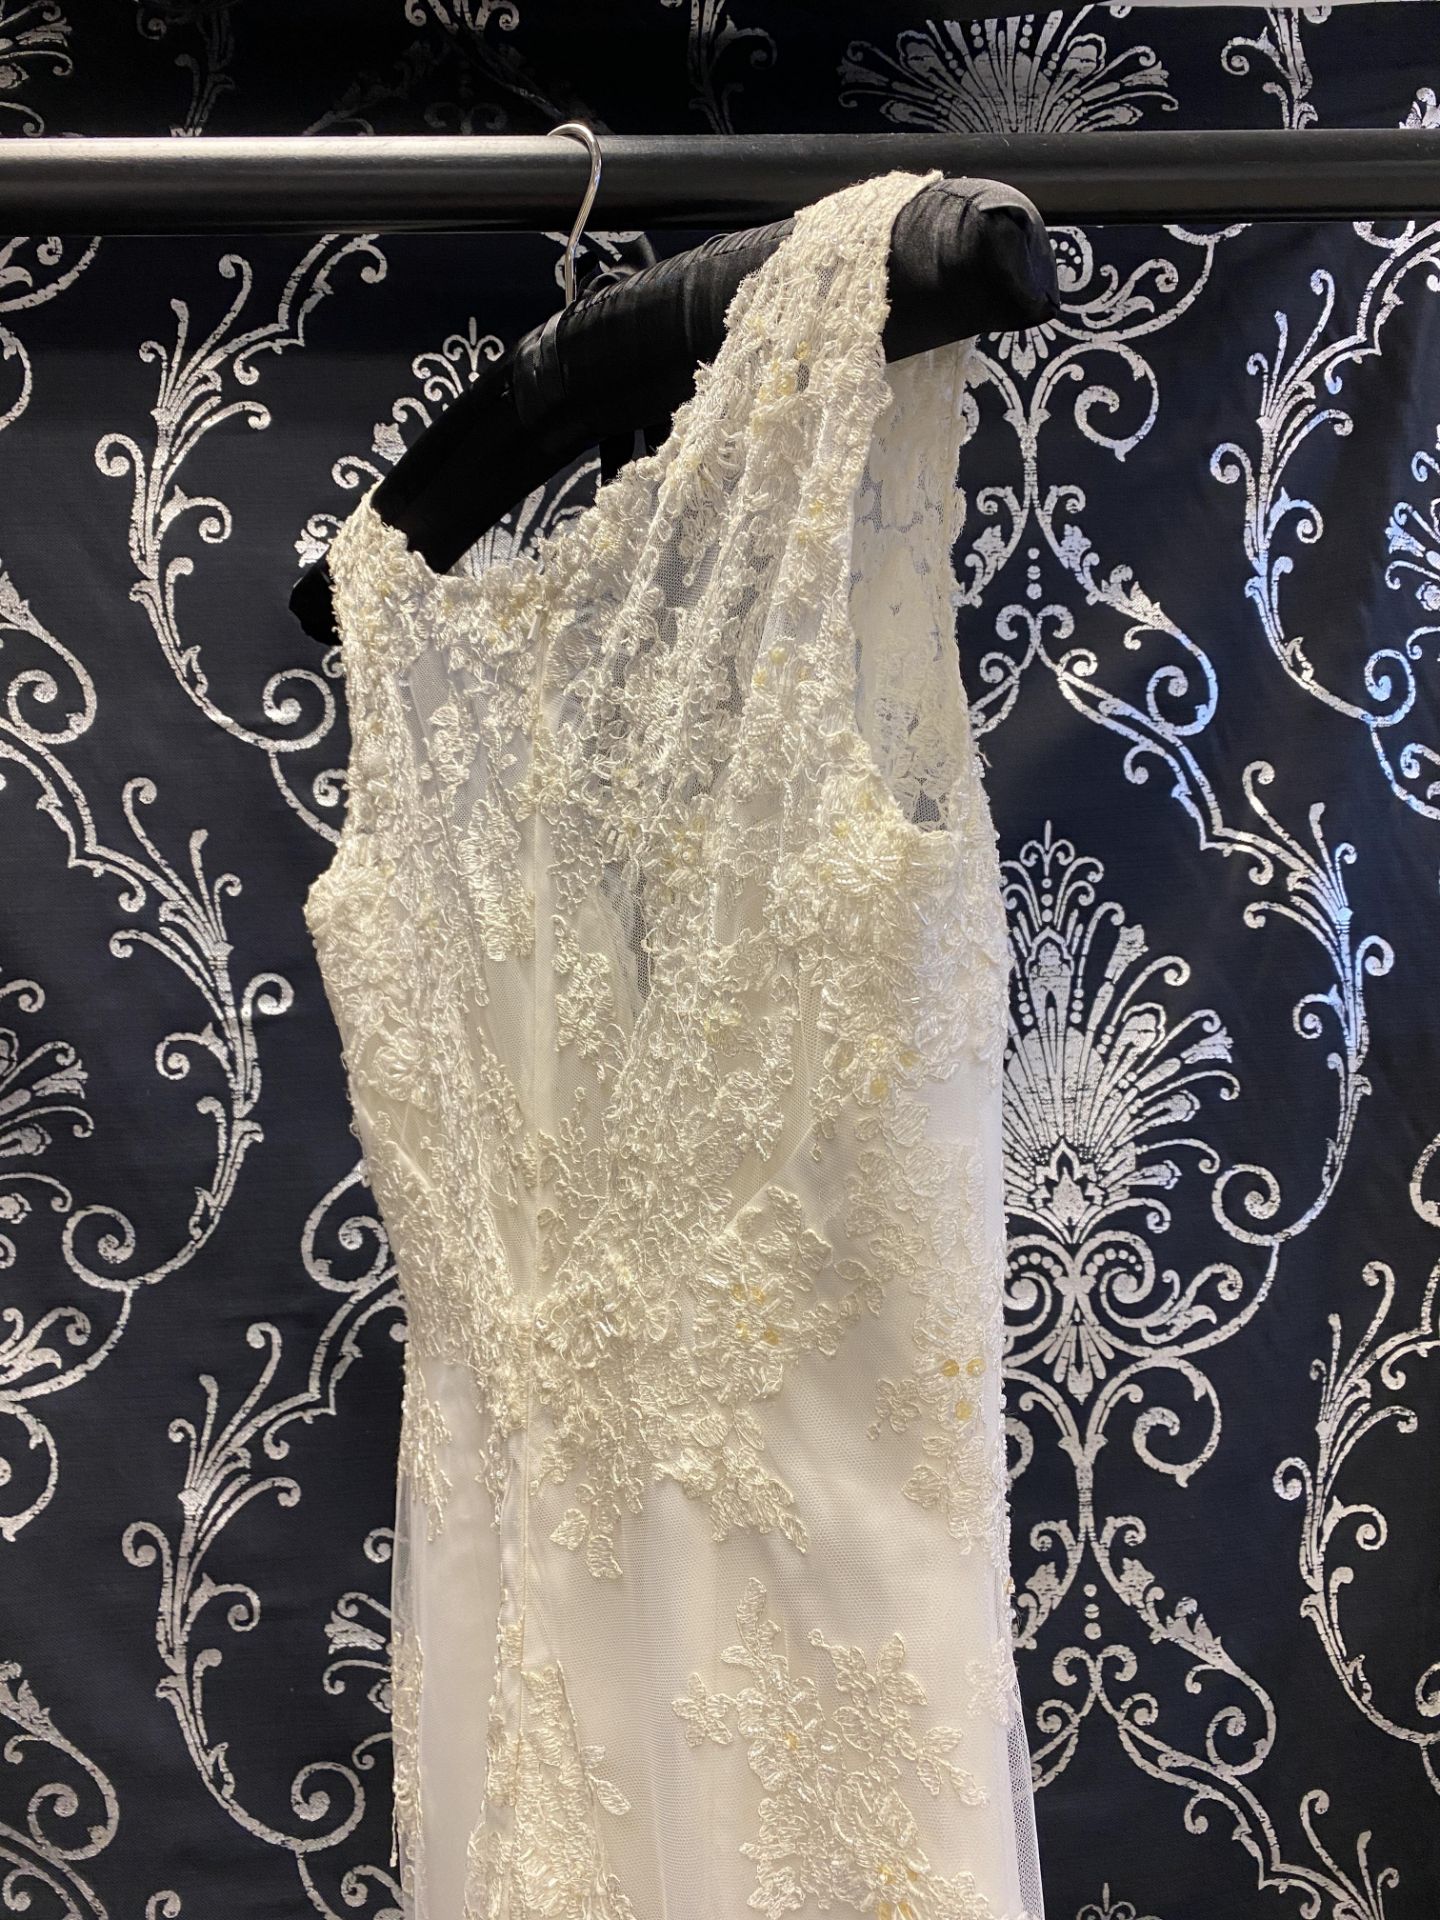 1 x LUSAN MANDONGUS 'Seychelle' Lace Overlay Biased Cut Designer Wedding Dress RRP £1,500 UK10 - Image 4 of 9